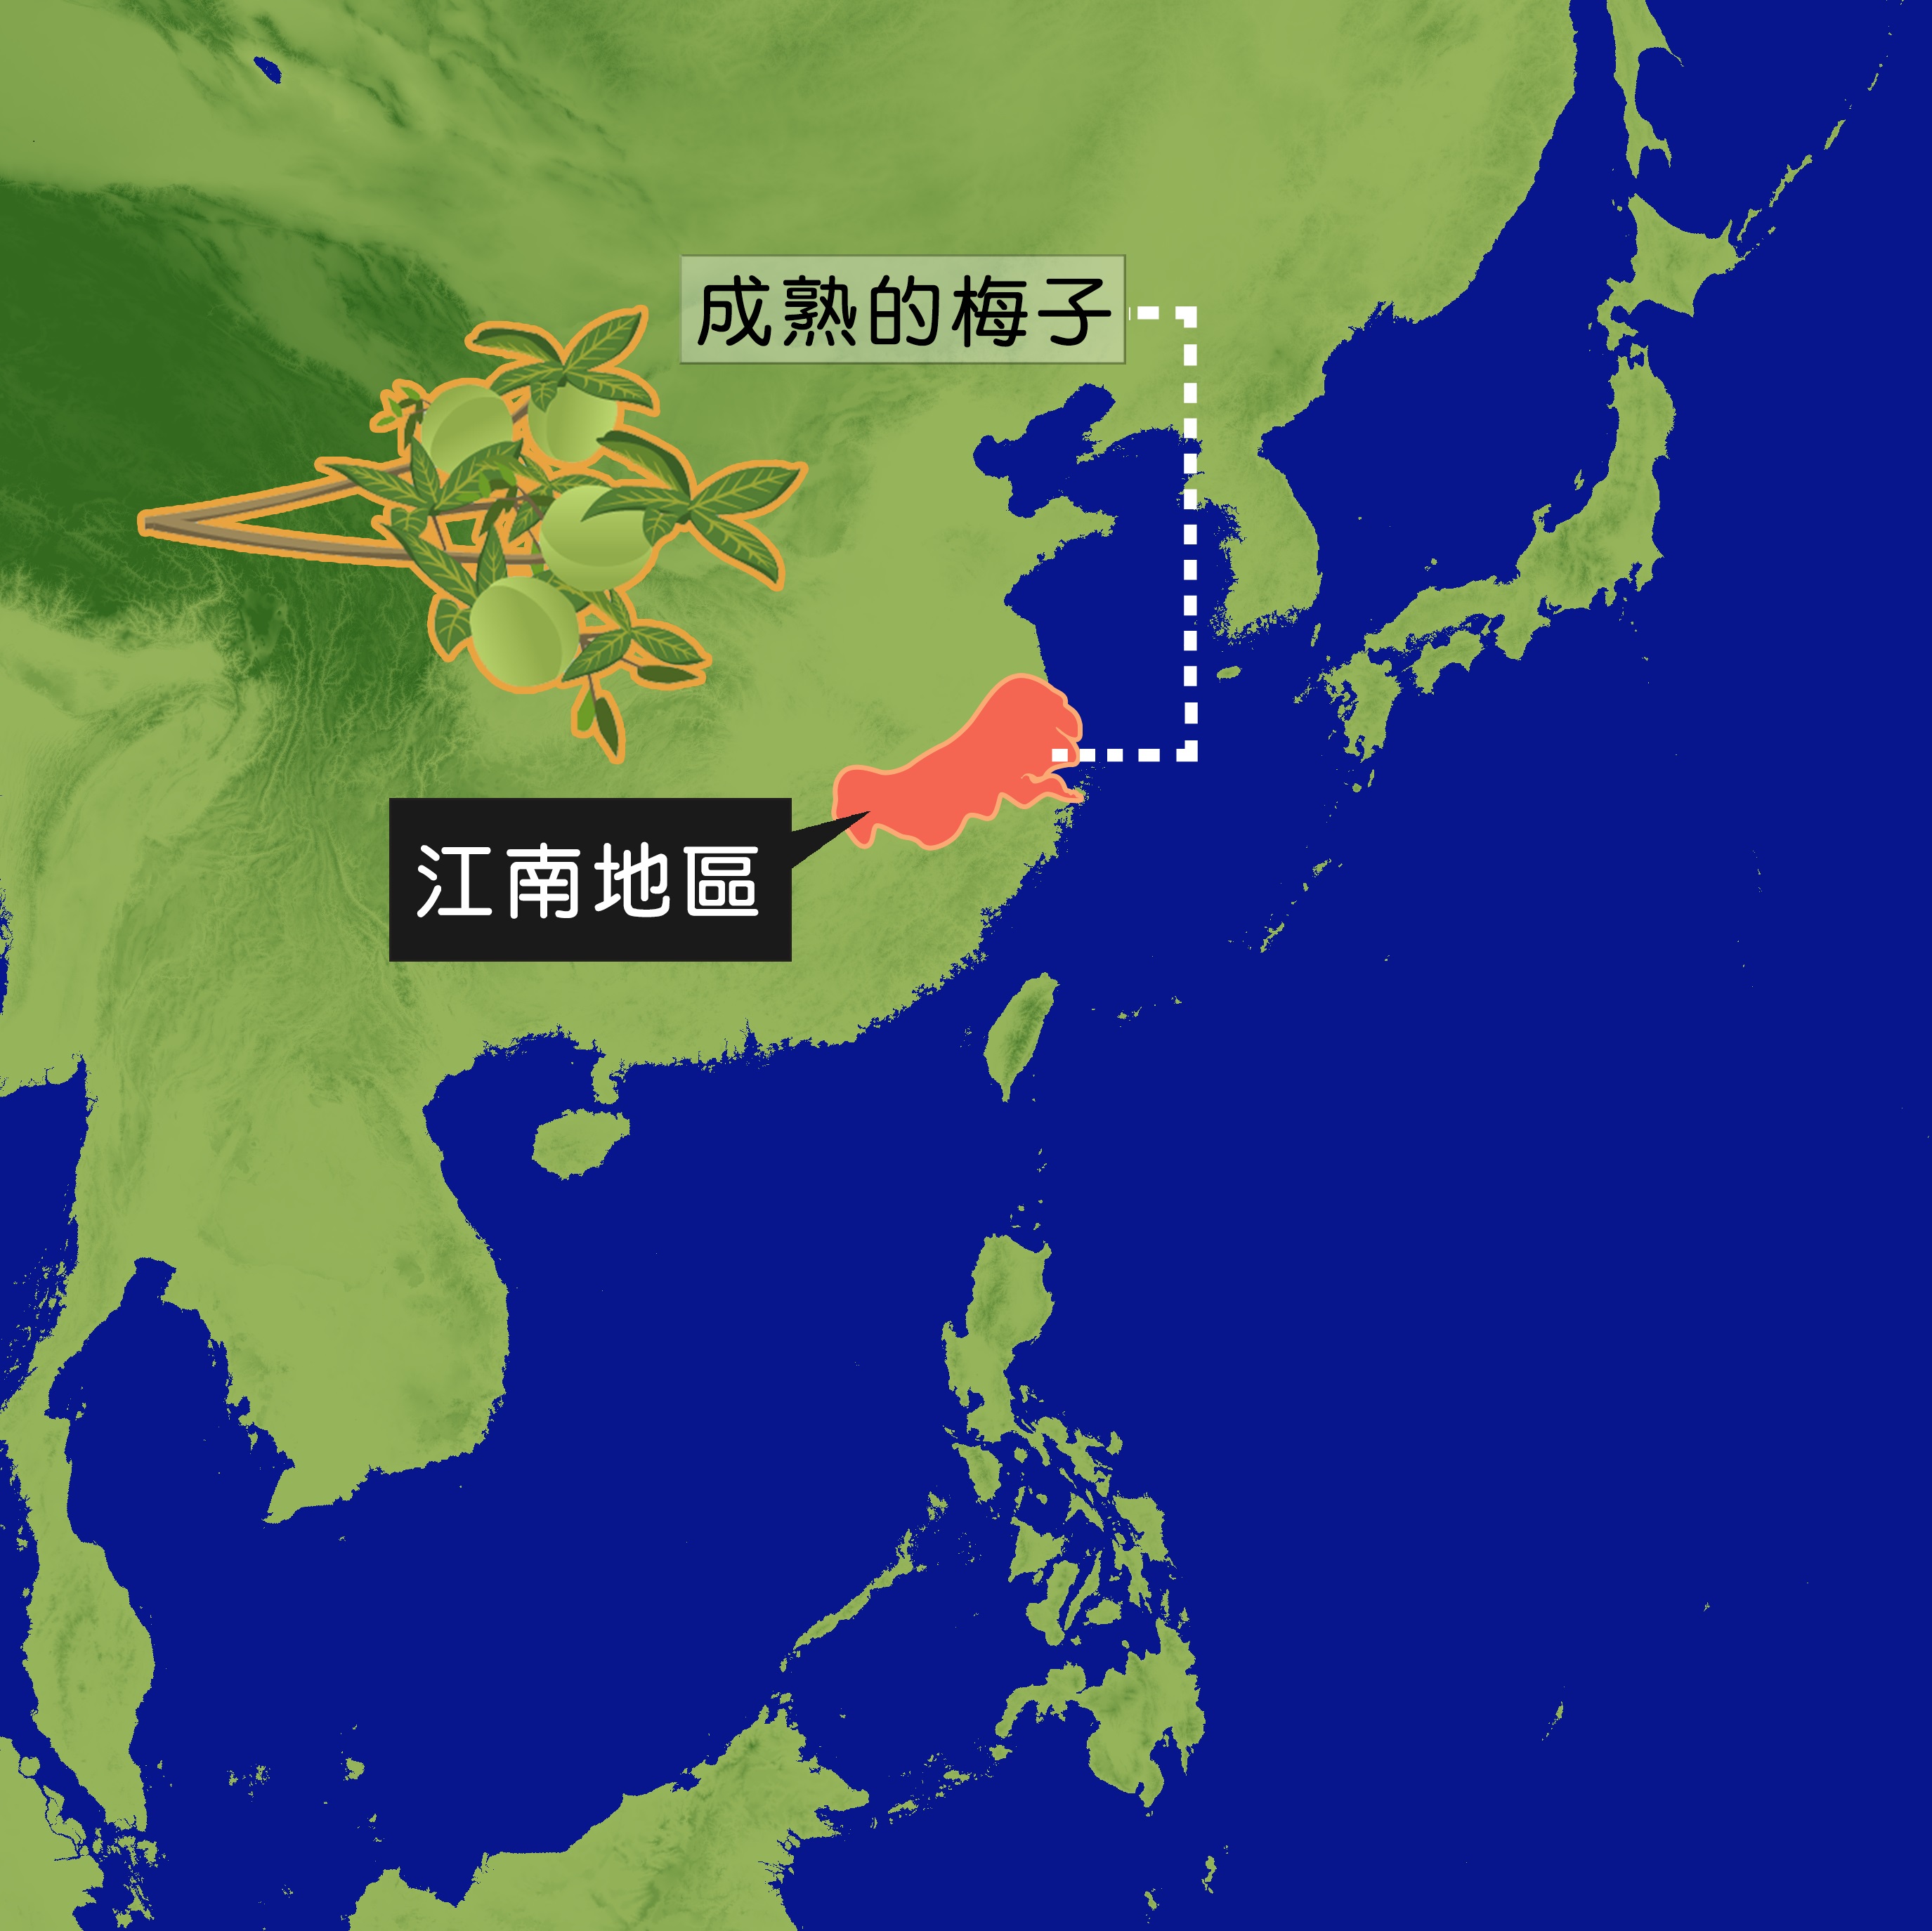 中國江南地區，在梅子成熟之際往往會遇上好幾個禮拜的間歇性對流雨，因此這類型的天氣被稱為梅雨